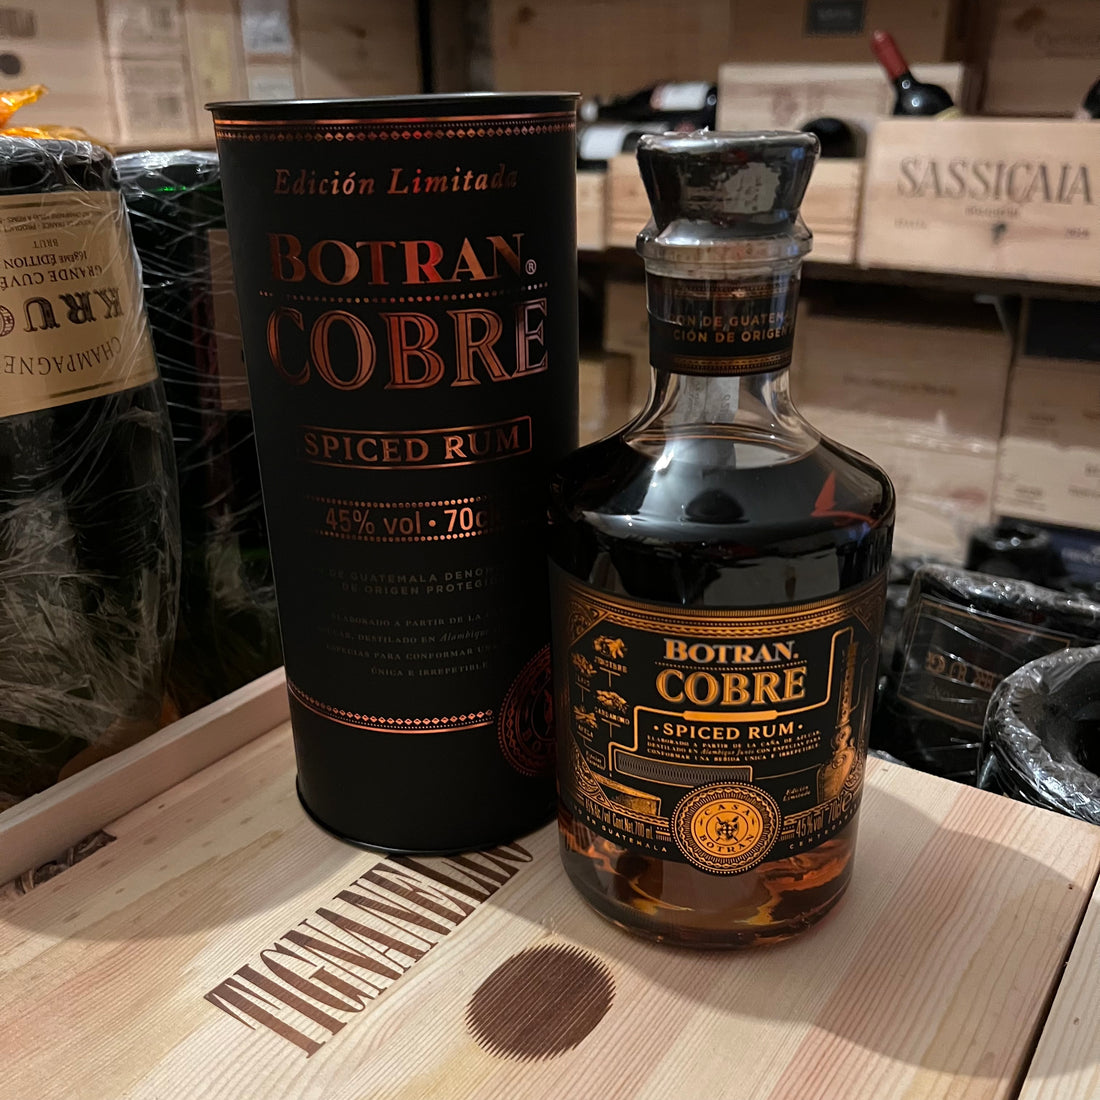 Botran Cobre Spicied Rum Limited Edition 45% Vol.